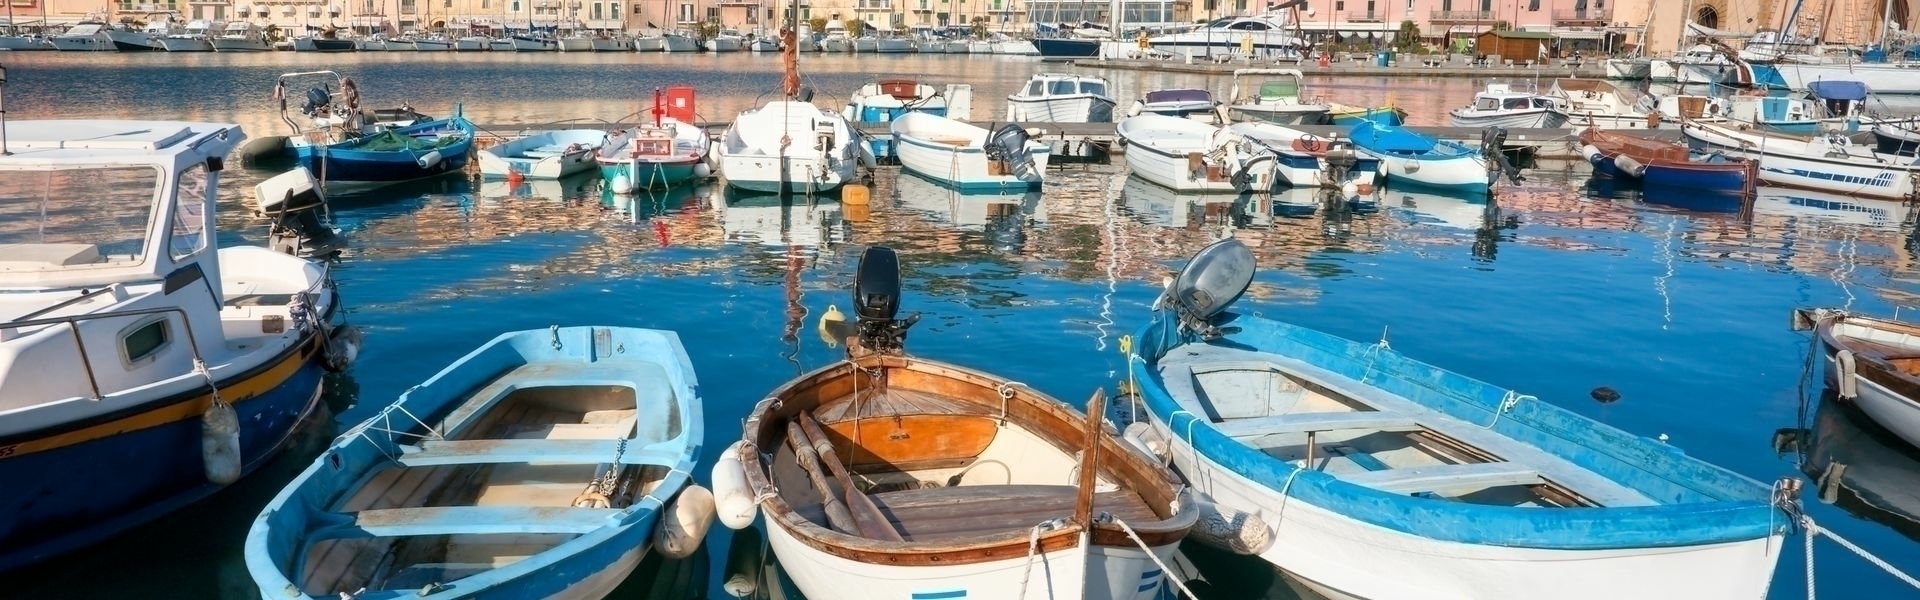 Campings Italië aan zee